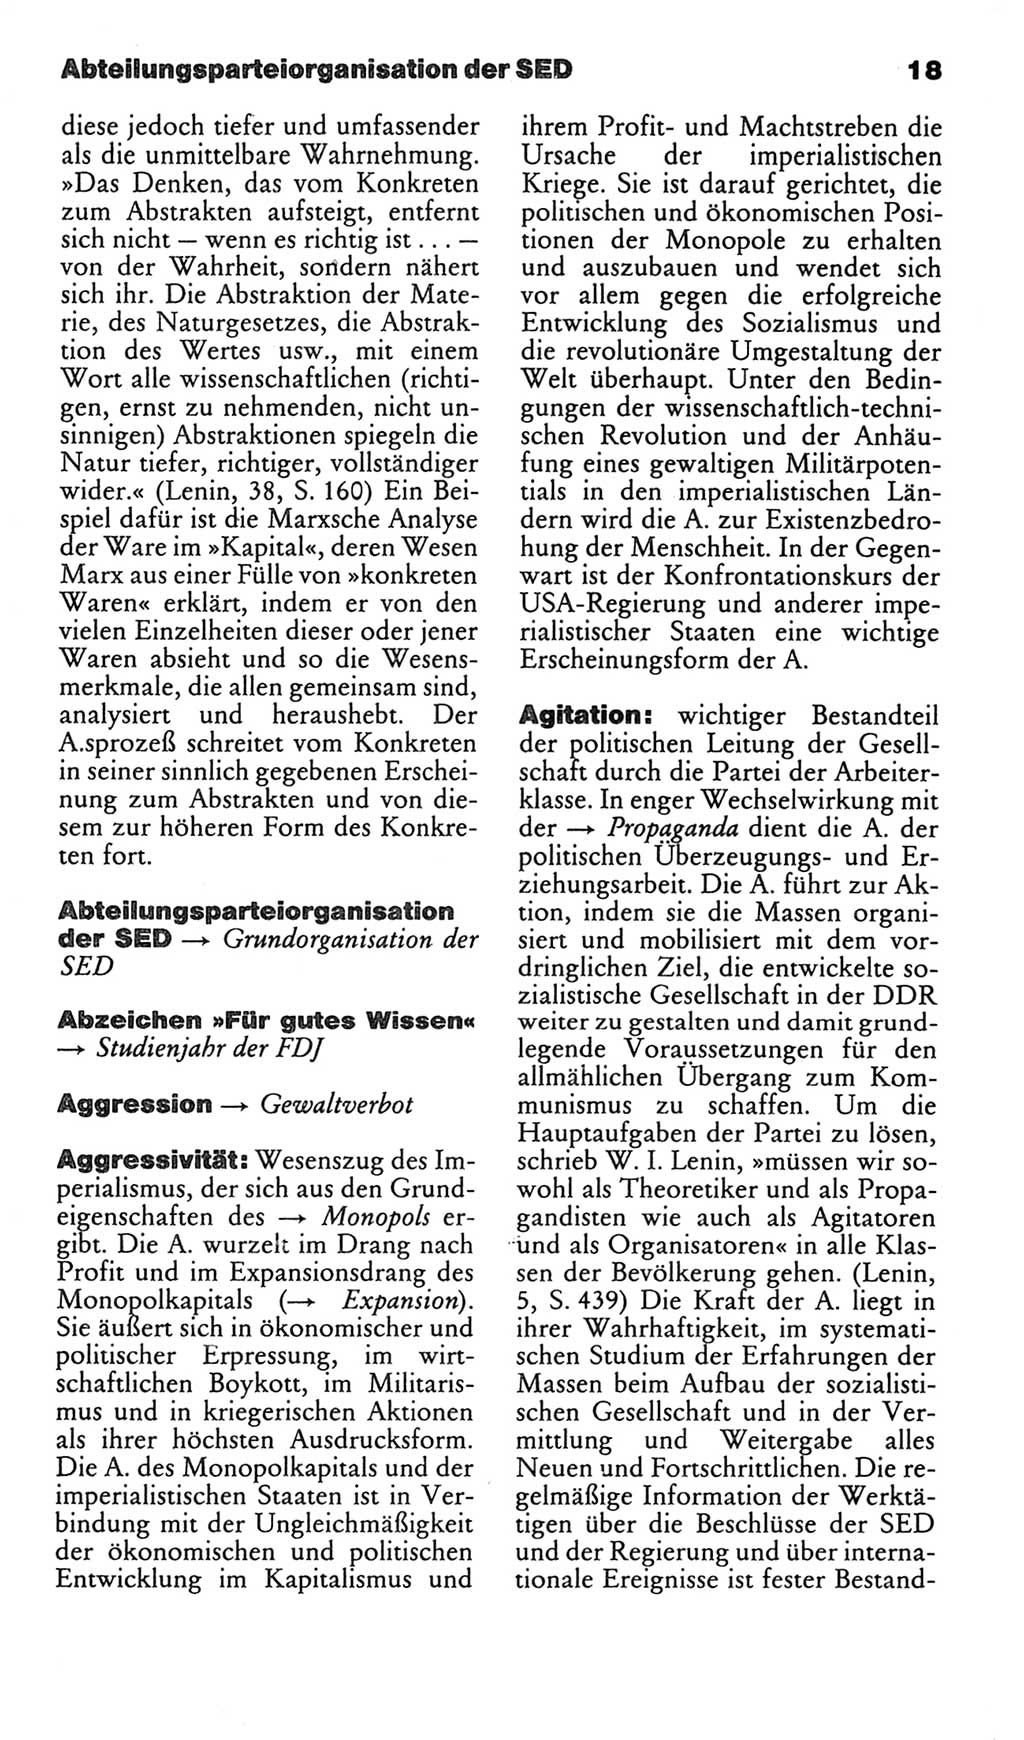 Kleines politisches Wörterbuch [Deutsche Demokratische Republik (DDR)] 1986, Seite 18 (Kl. pol. Wb. DDR 1986, S. 18)